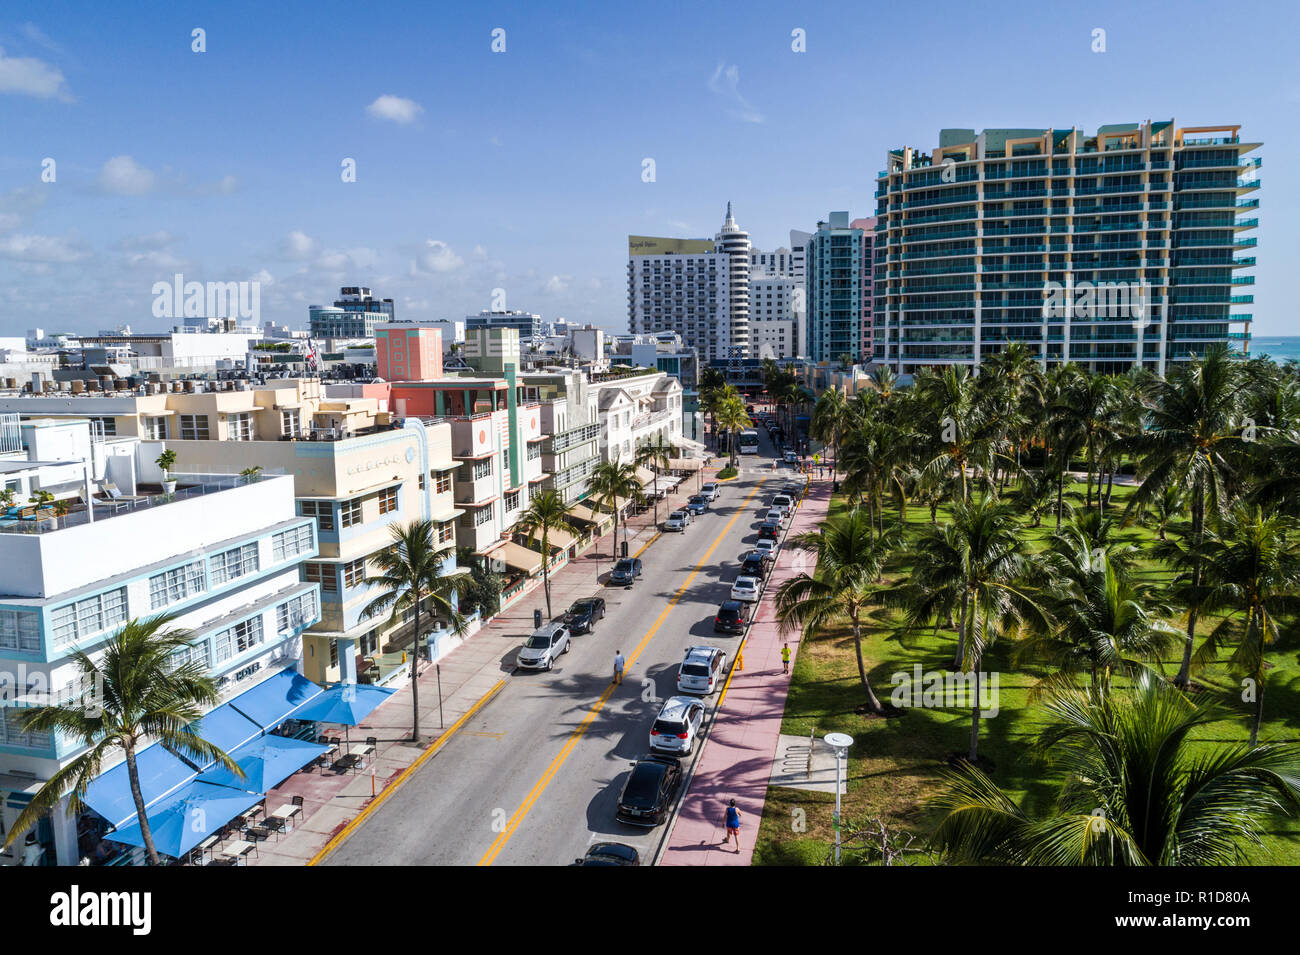 Miami Beach Florida,Ocean Drive,Lummus Park,aerial overhead view,The Penguin,hotel,Il Villaggio,condominium residential apartment apartments building Stock Photo